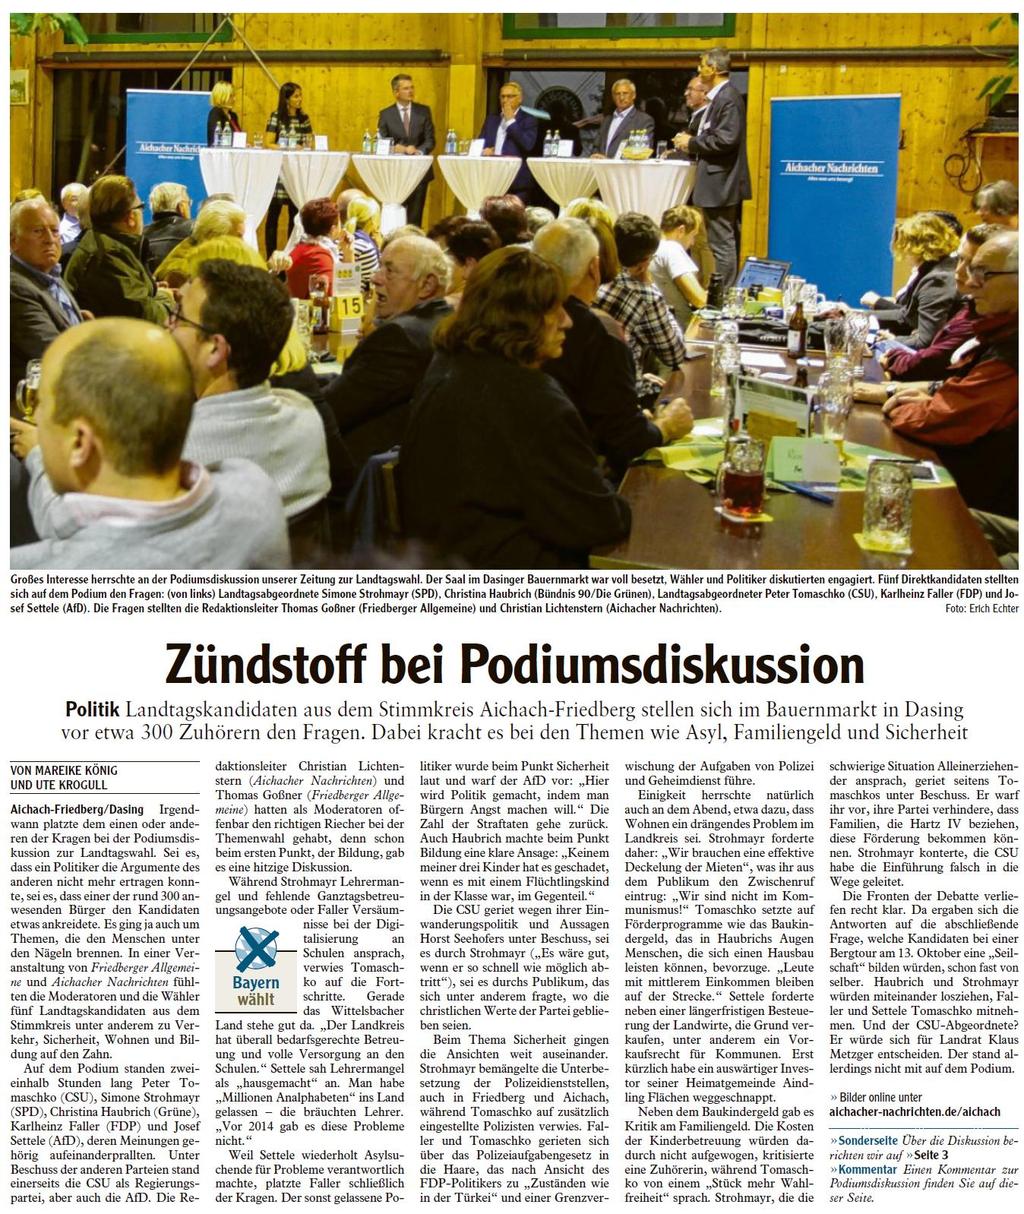 Podiumsdiskussion in Dasing zur Landtagswahl, moderiert